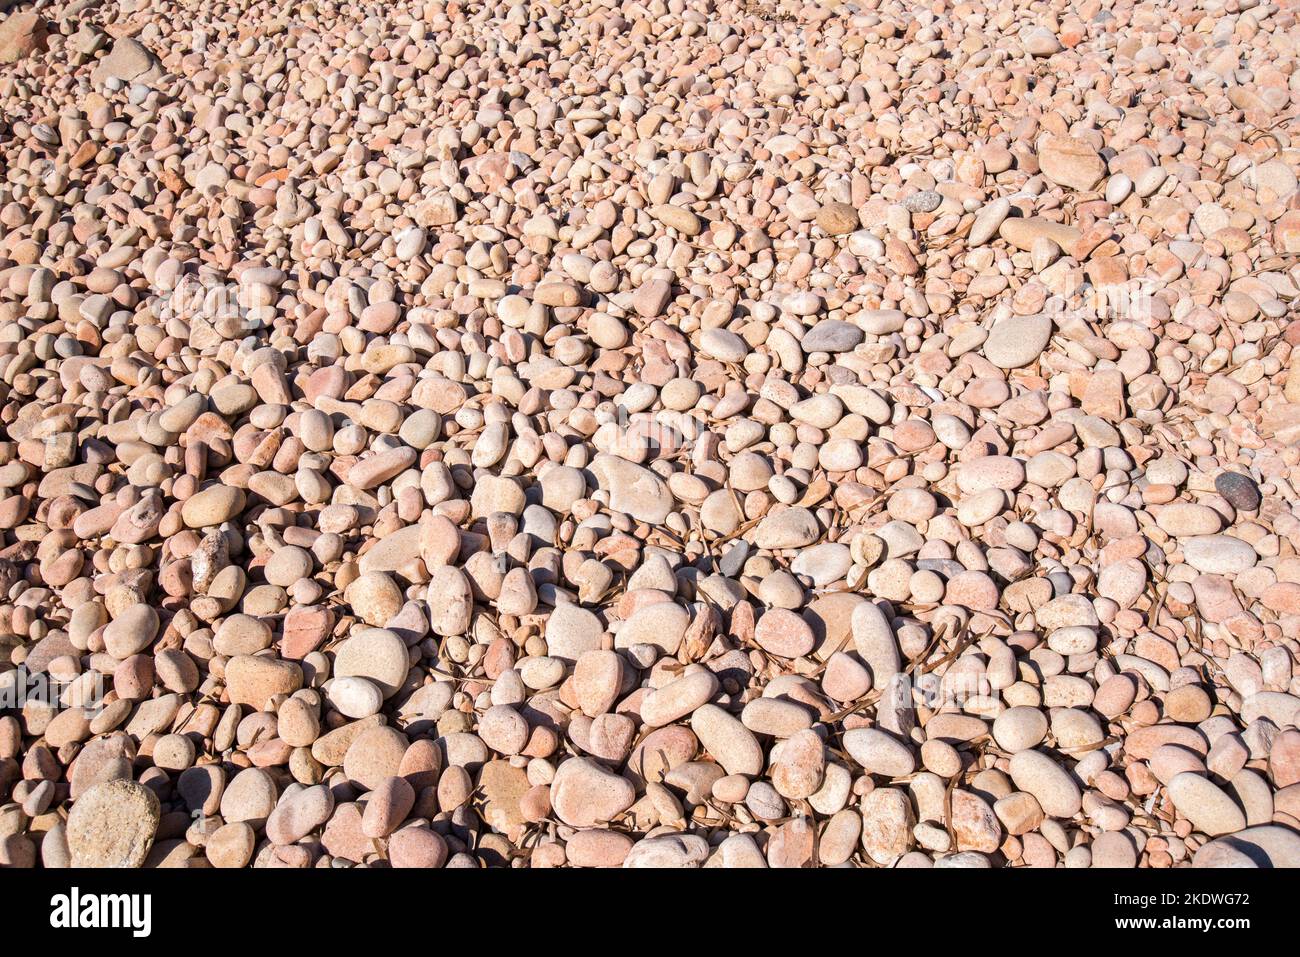 Un gradevole sfondo naturale, formato da pietre tonde, levigate dagli elementi naturali Stock Photo